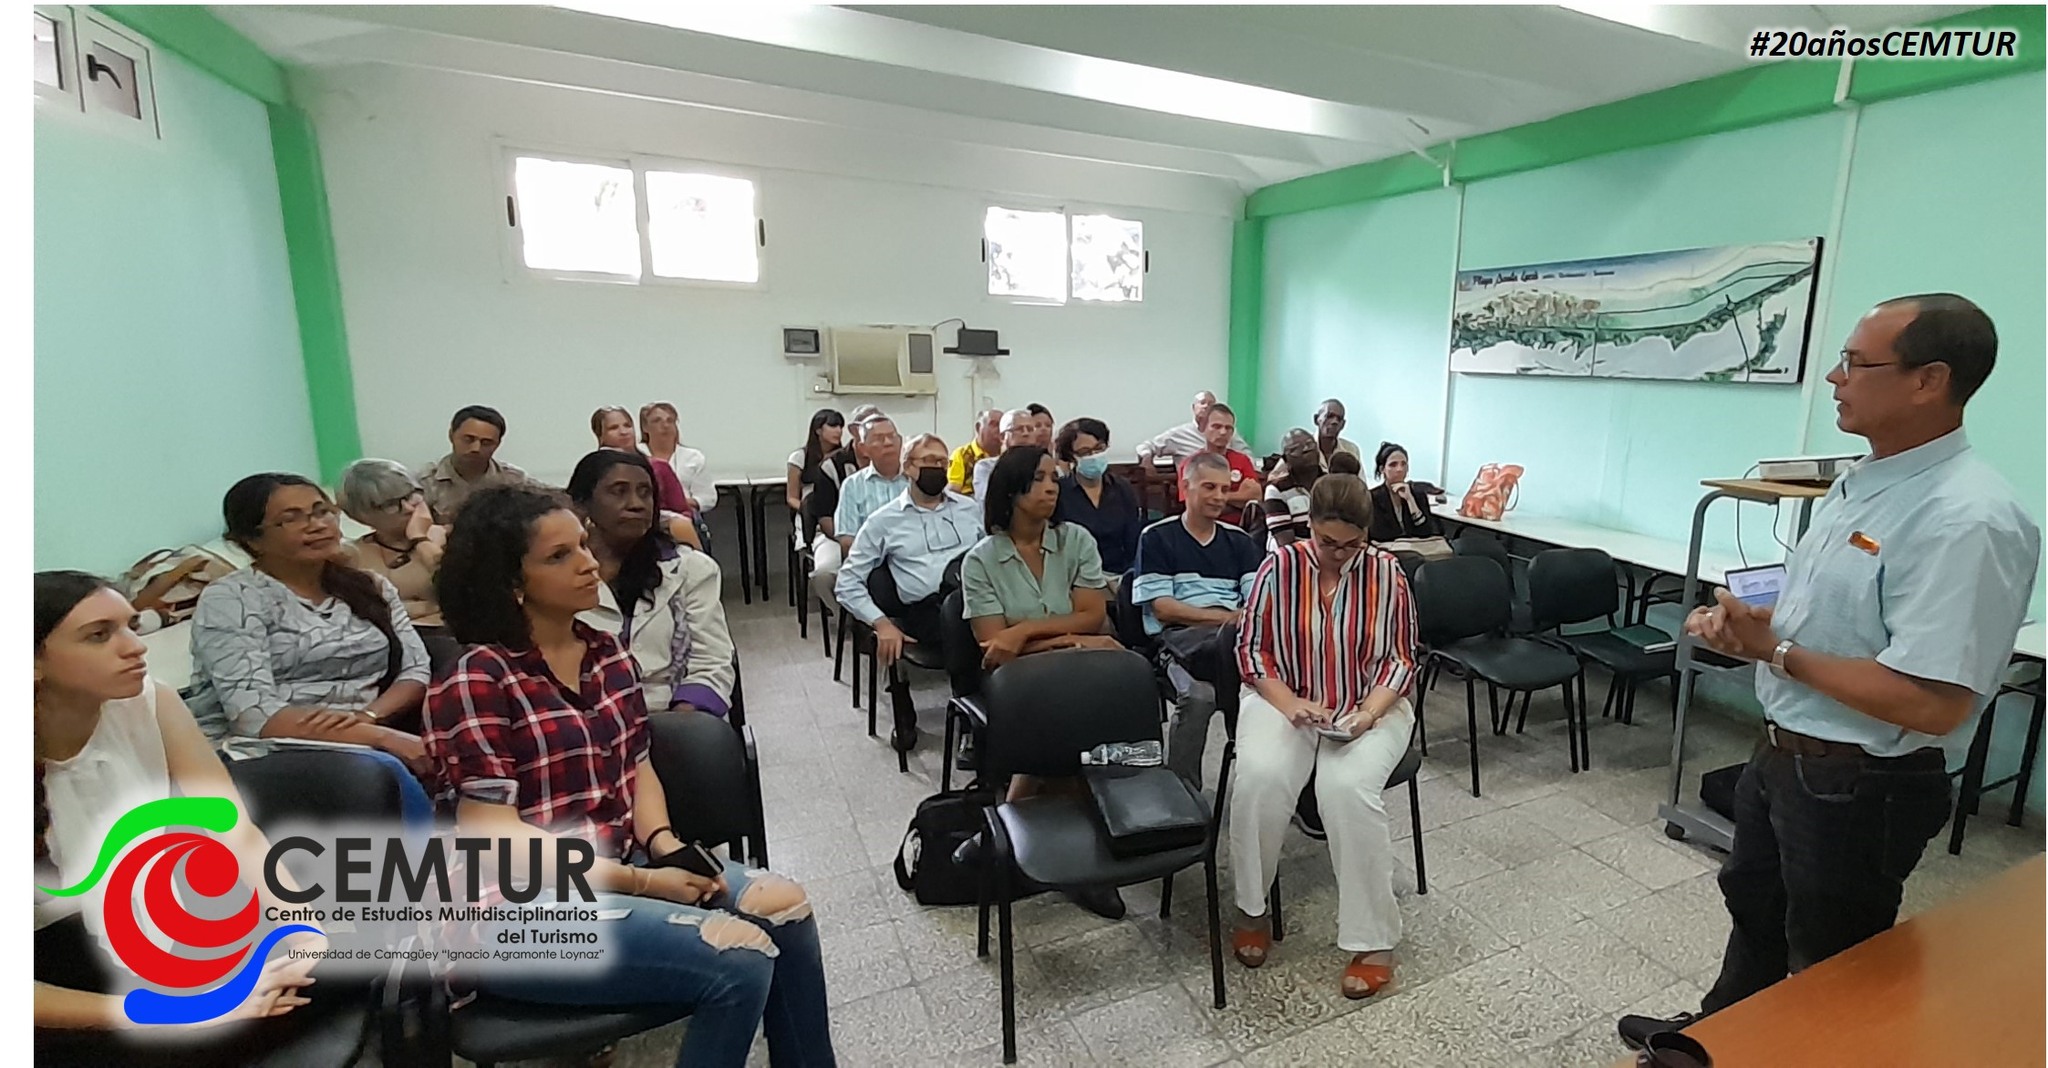 Journée scientifique fructueuse basée sur le développement touristique à Camagüey